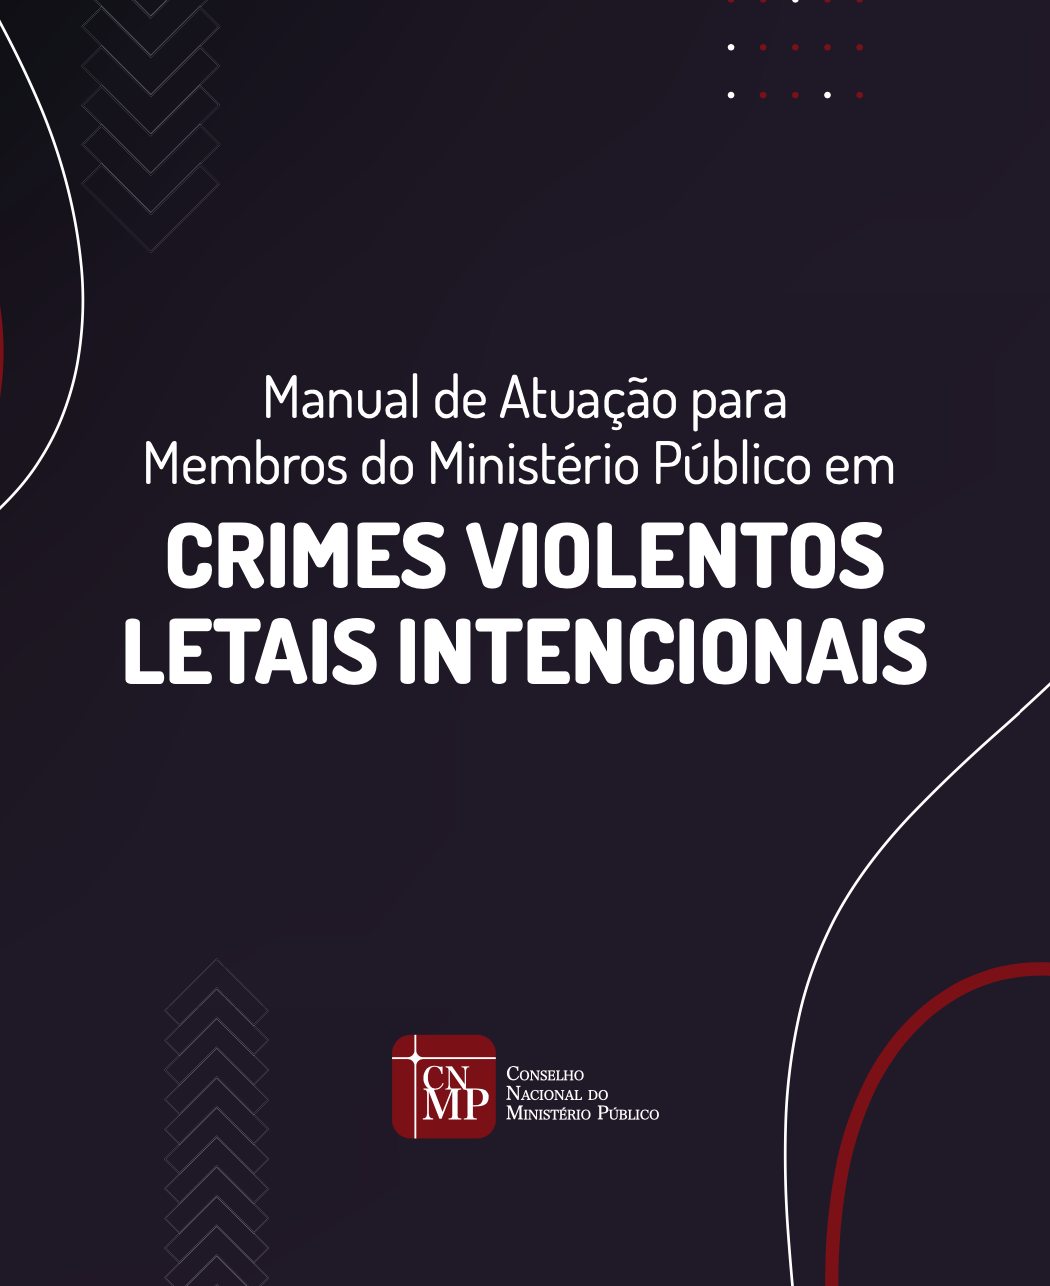 Manual de Atuação para Membros do Ministério Público em Crimes Violentos Letais Intencionais